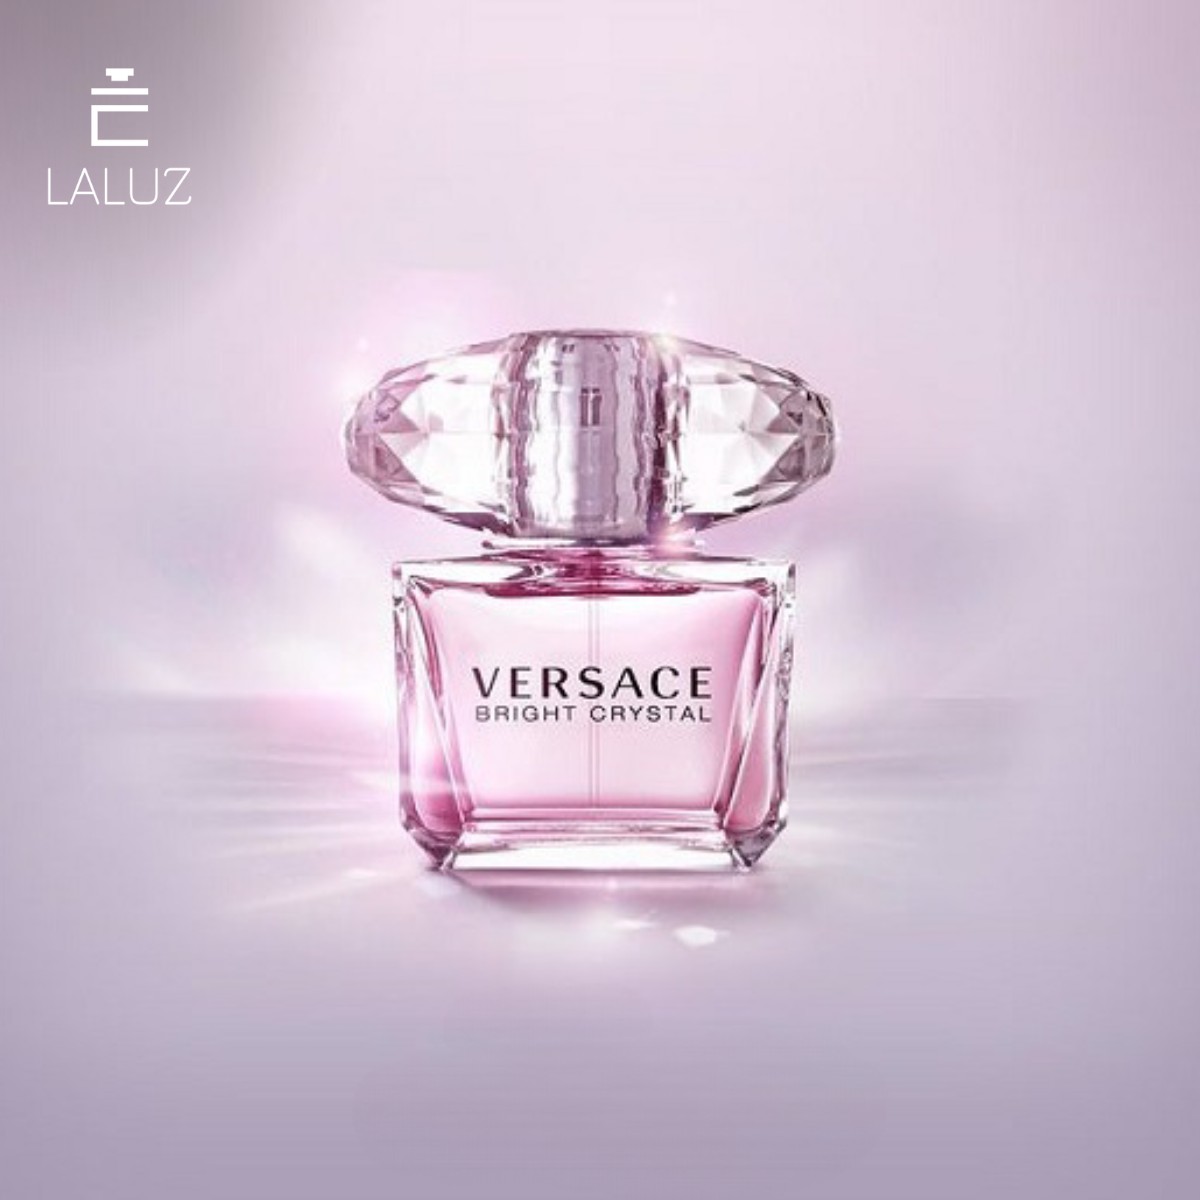 Versace Bright Crystal EDT là biểu tượng vẻ đẹp tinh tế và sang trọng của người phụ nữ